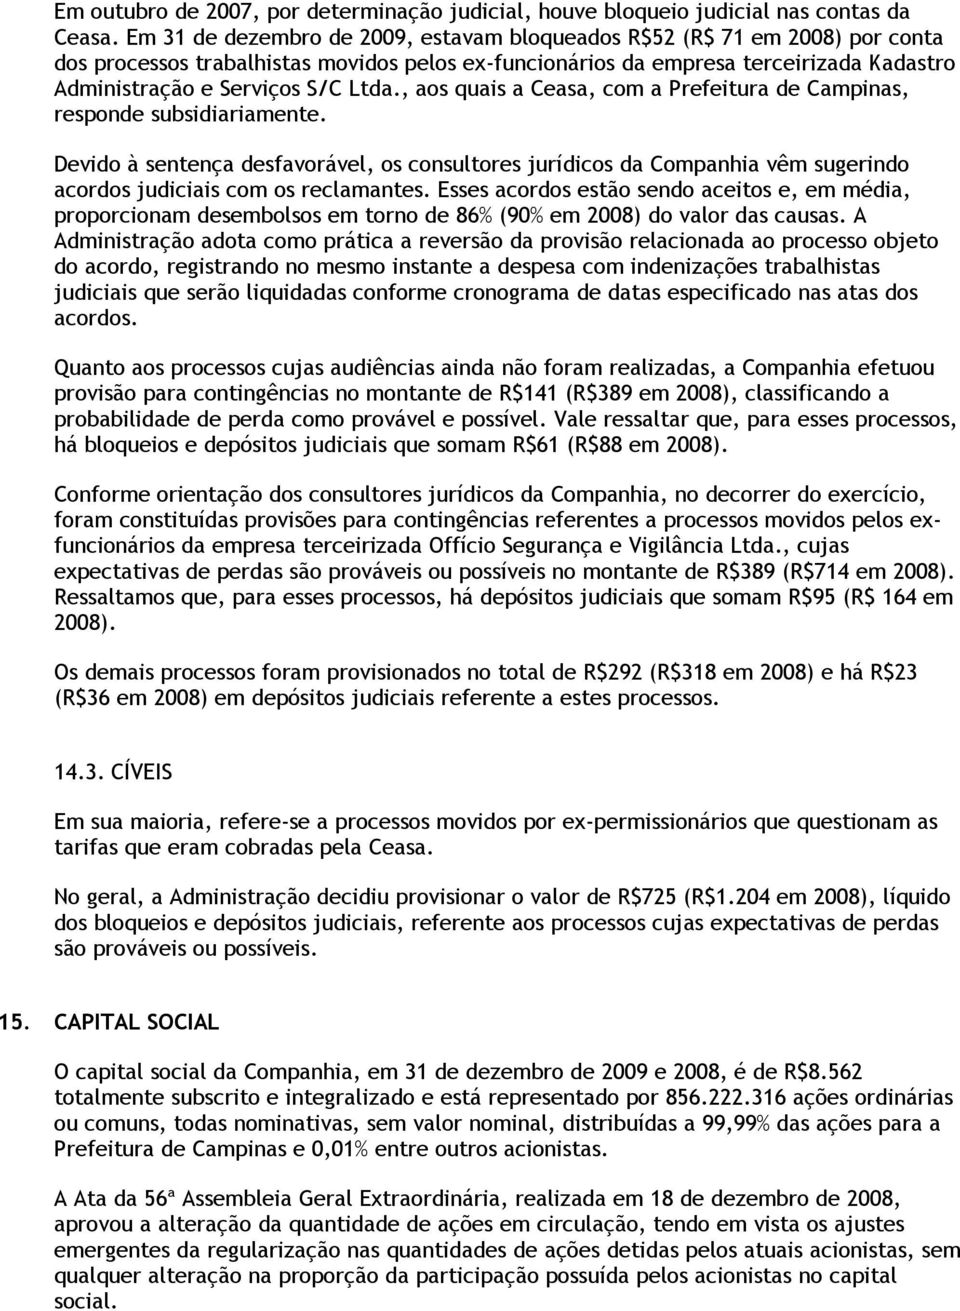 Ltda., aos quais a Ceasa, com a Prefeitura de Campinas, responde subsidiariamente.